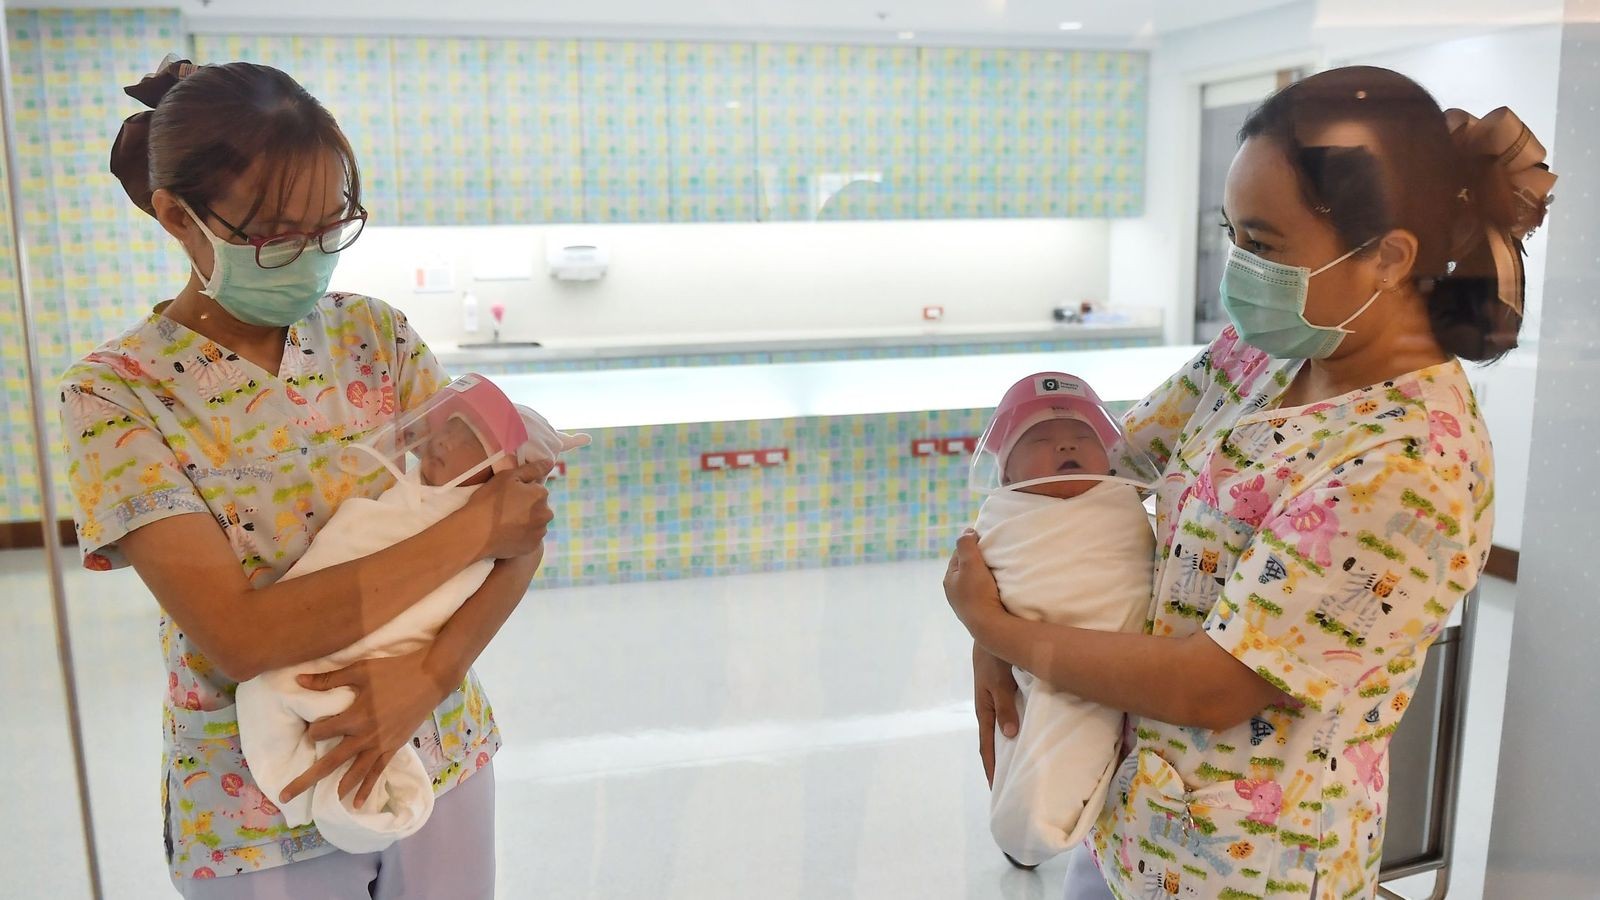 Enfermeiras mostram recém-nascidos aos familiares na Tailândia (Foto: Reprodução Twitter @Athit_P)